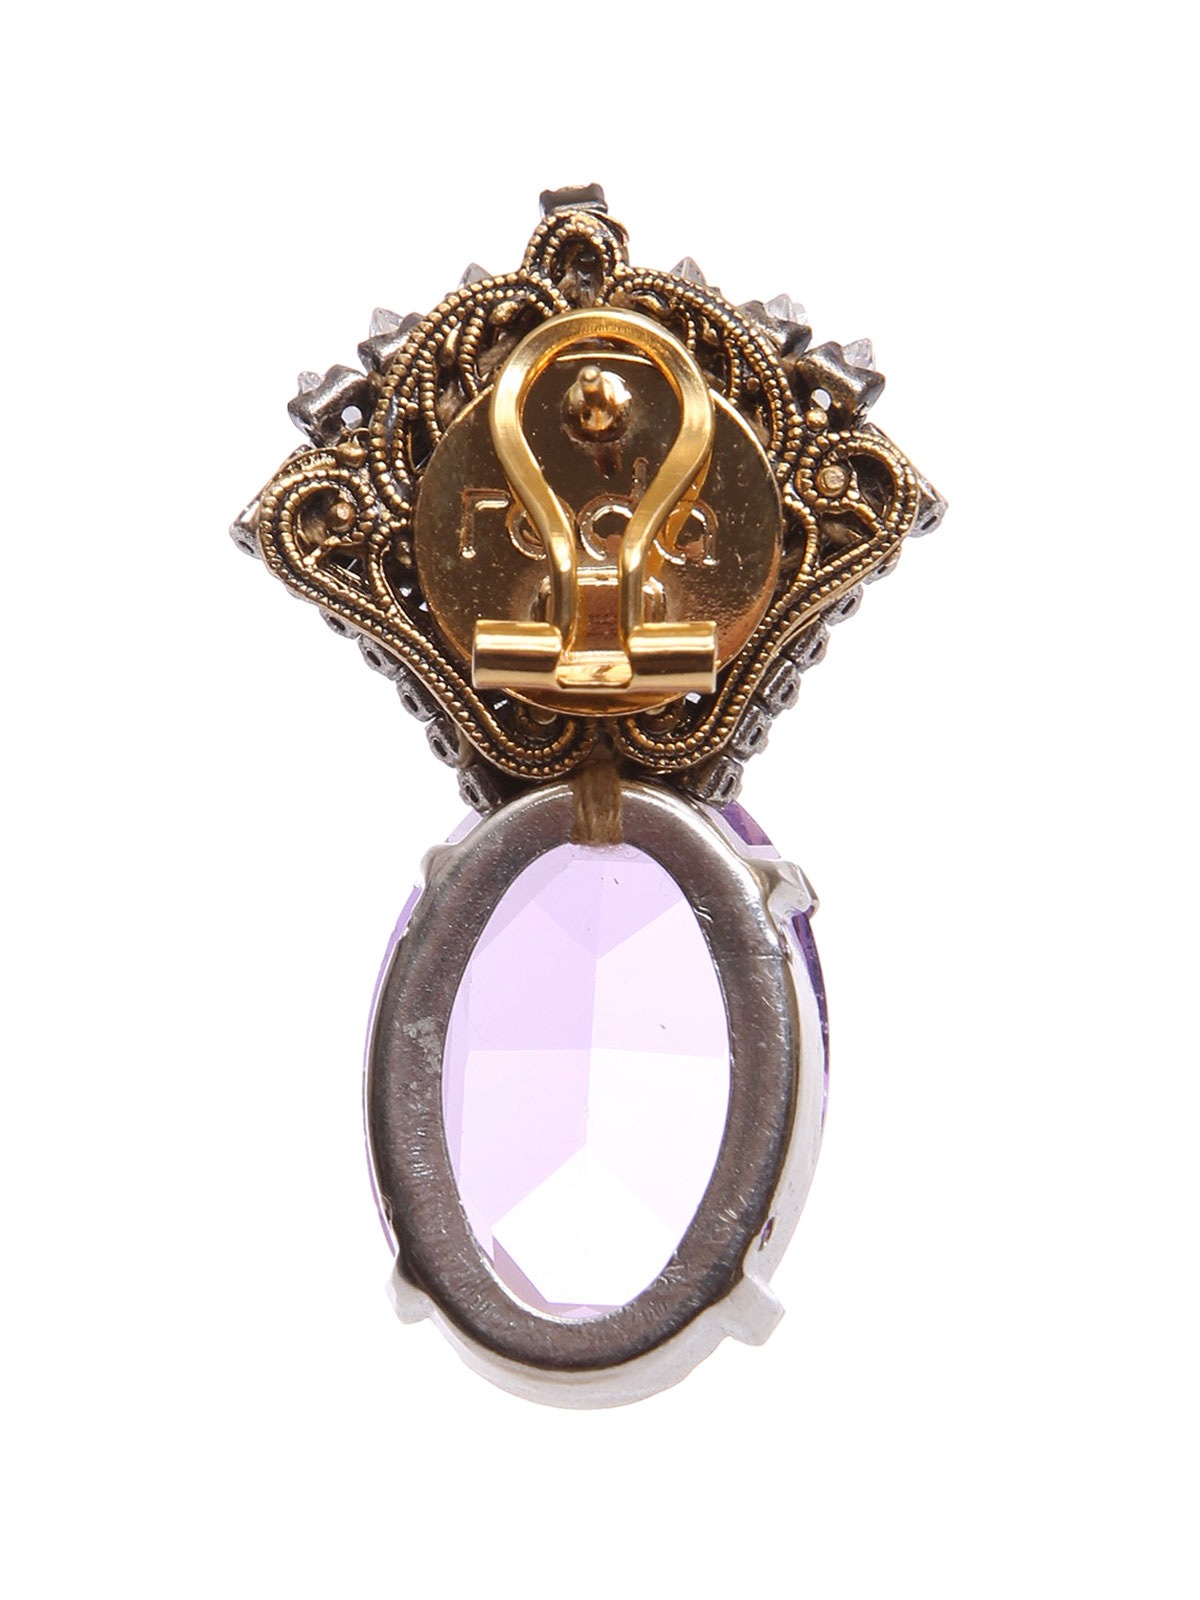 Jewel fan earrings with oval stone